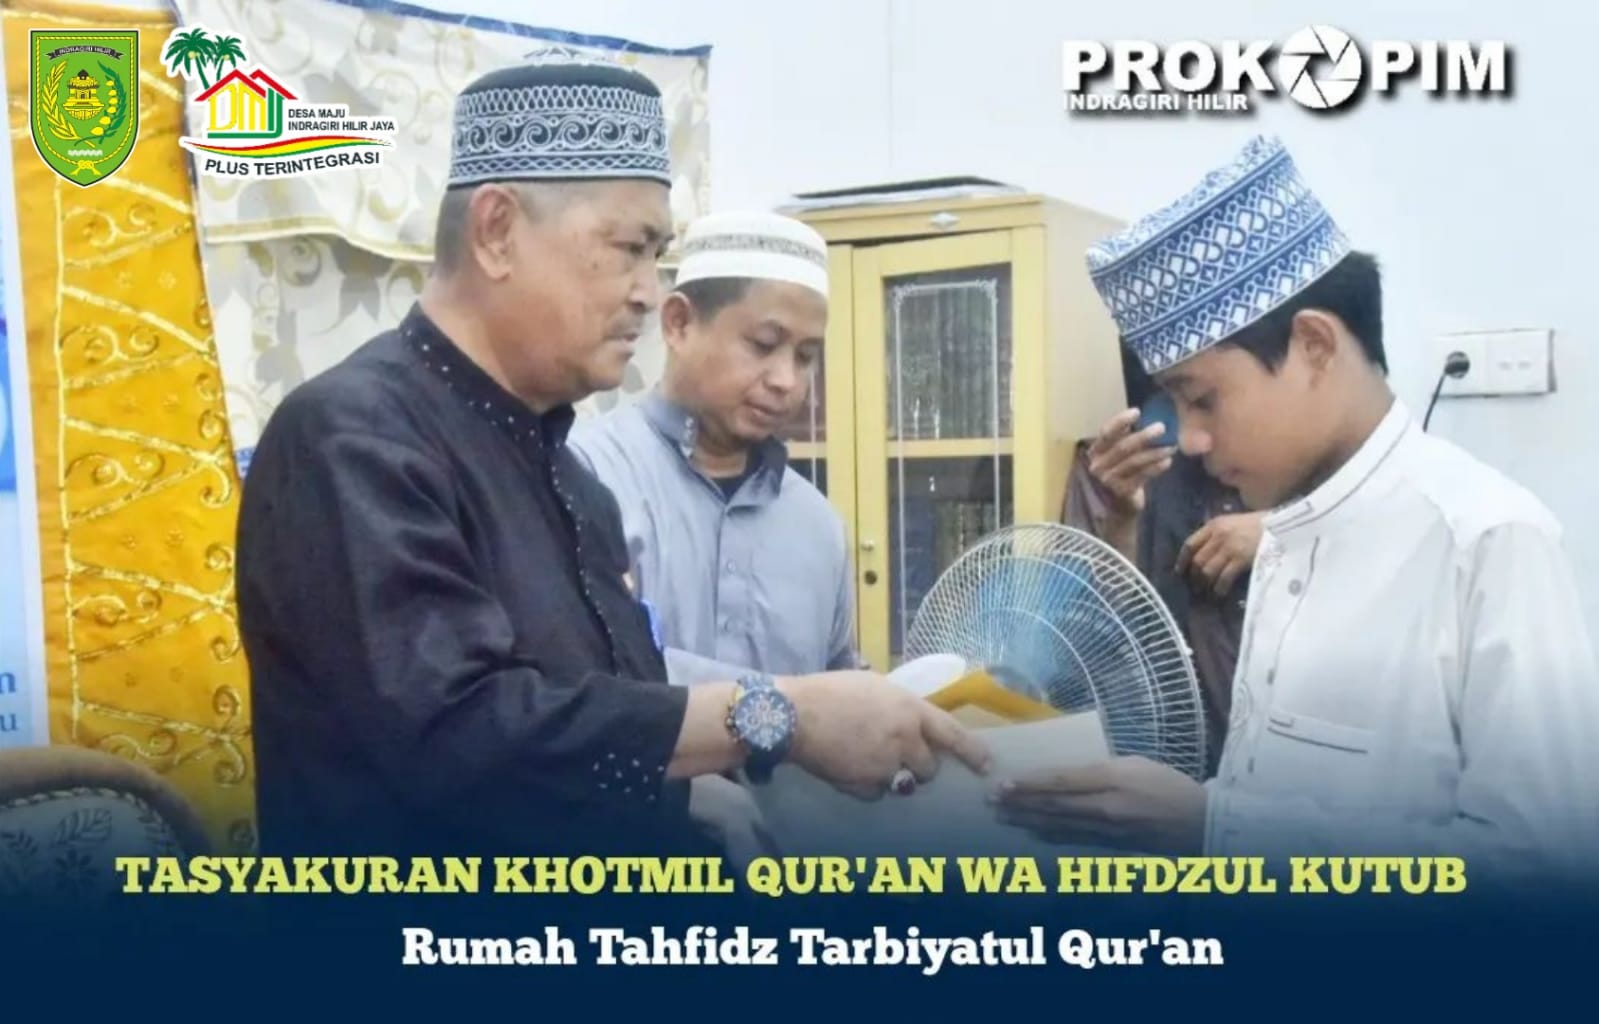 Tasyakuran Khotmil Qur'an wa Hifdzul Kutub, H Syamsuddin Uti Ajak Kembangkan Rumah Tahfidz Melalui Program Pemda DMIJ Plus Terintegrasi